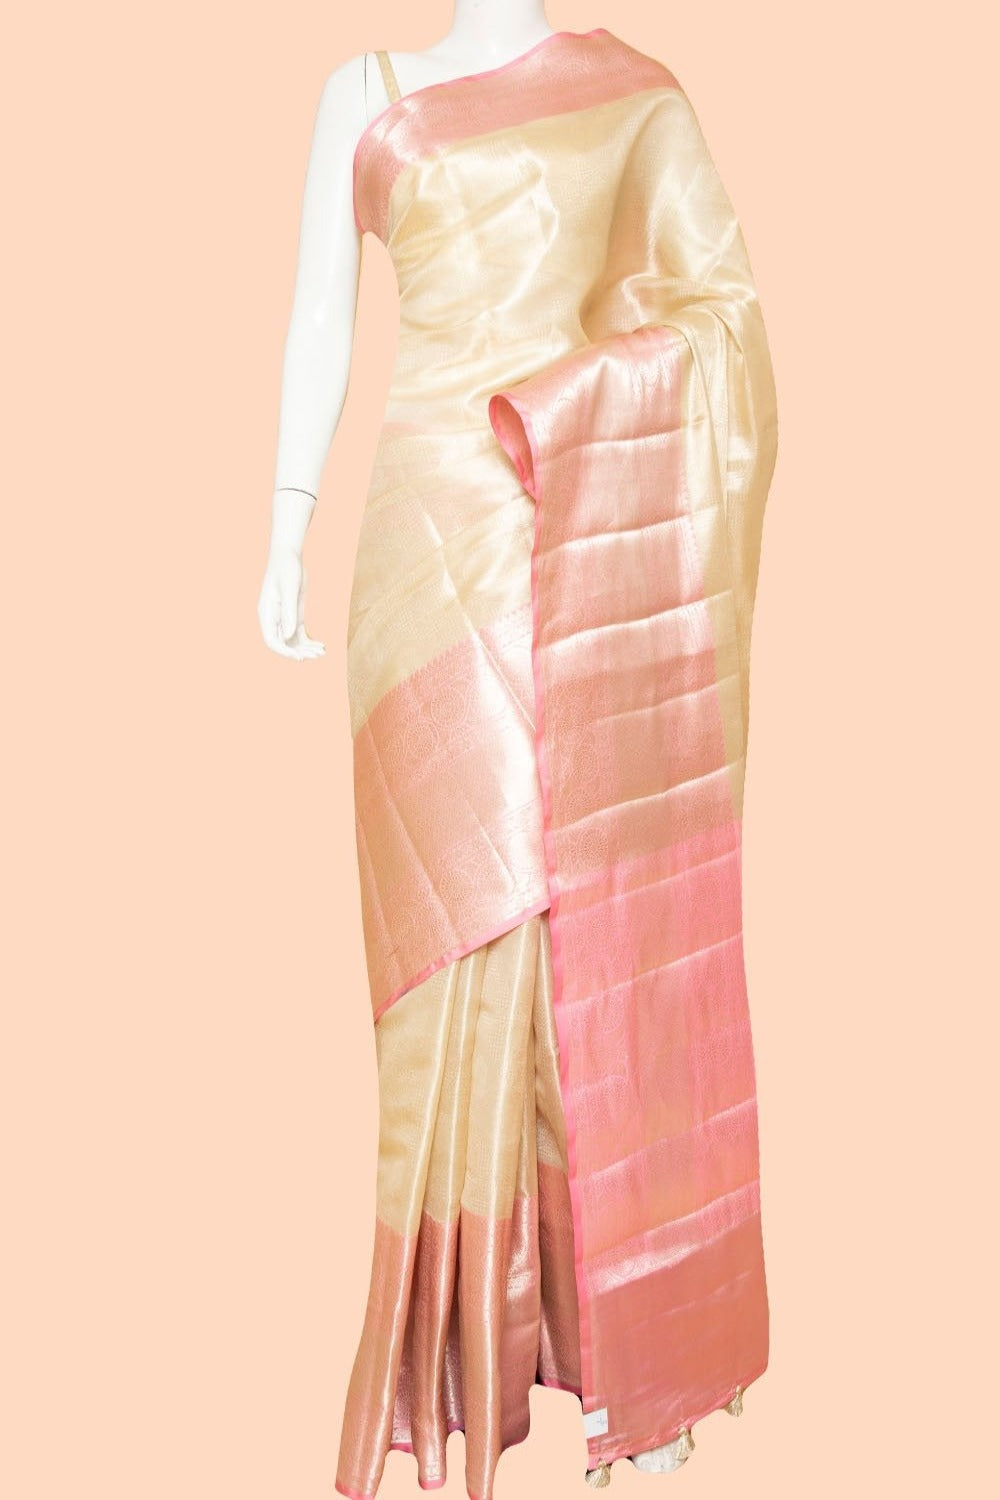 Banarasi Woven Silk Saree